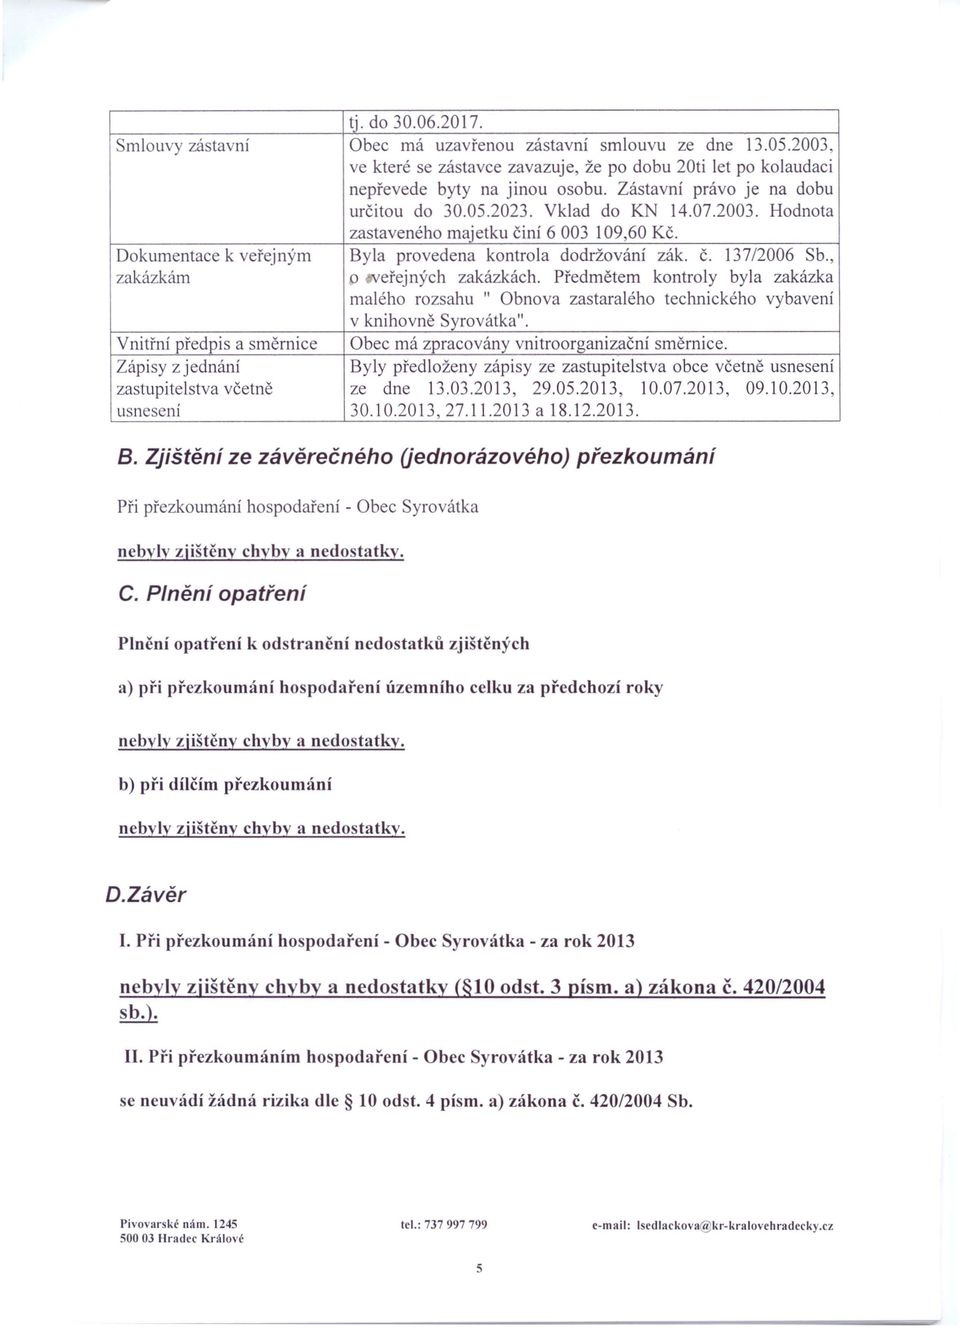 13712006 Sb., zakázkám o veřejných zakázkách. Předmětem kontroly byla zakázka malého rozsahu " Obnova zastaralého technického vybavení v knihovně Syrovátka".